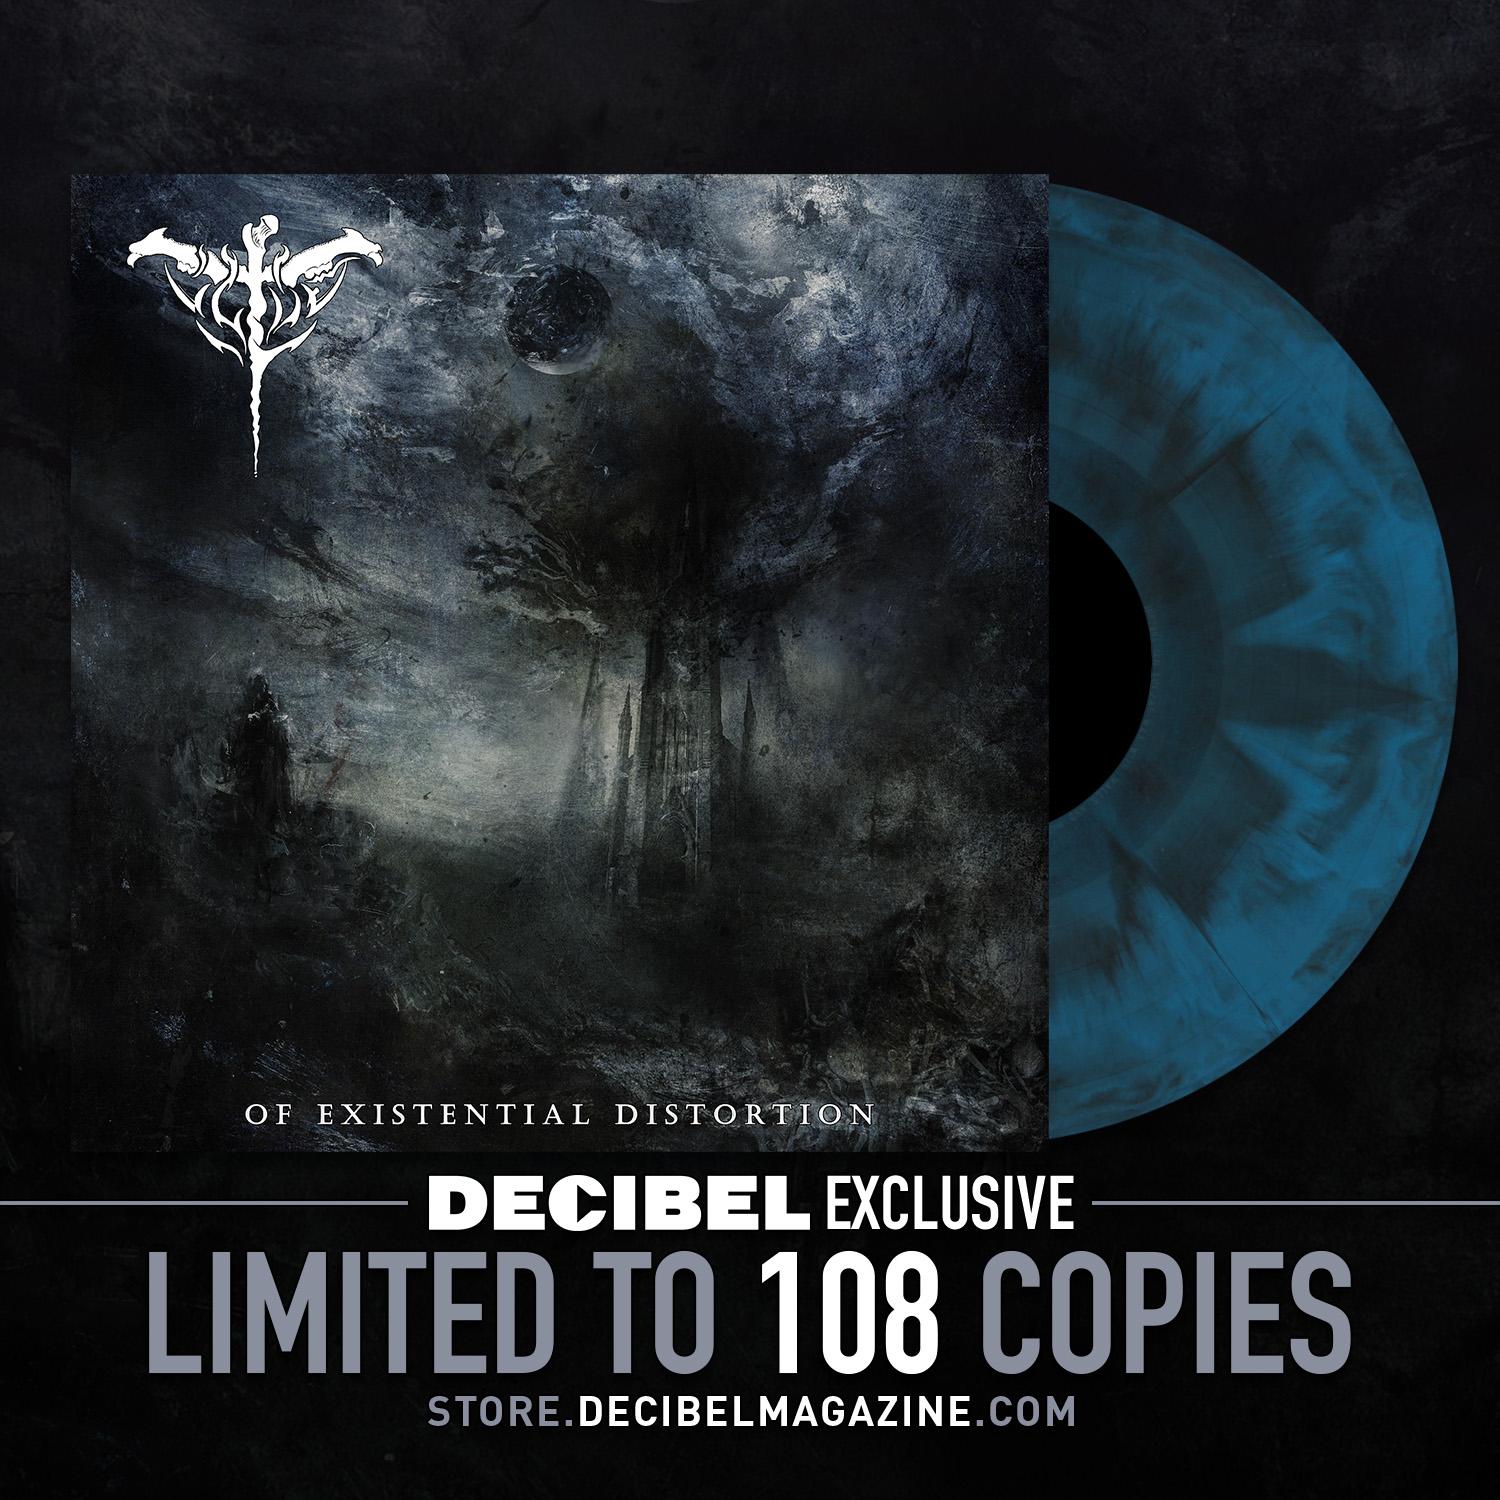 Pre-Order ÚLFÚÐ’s Debut Album ‘Of Existential Distortion’ on Decibel-Exclusive Vinyl RIGHT NOW!